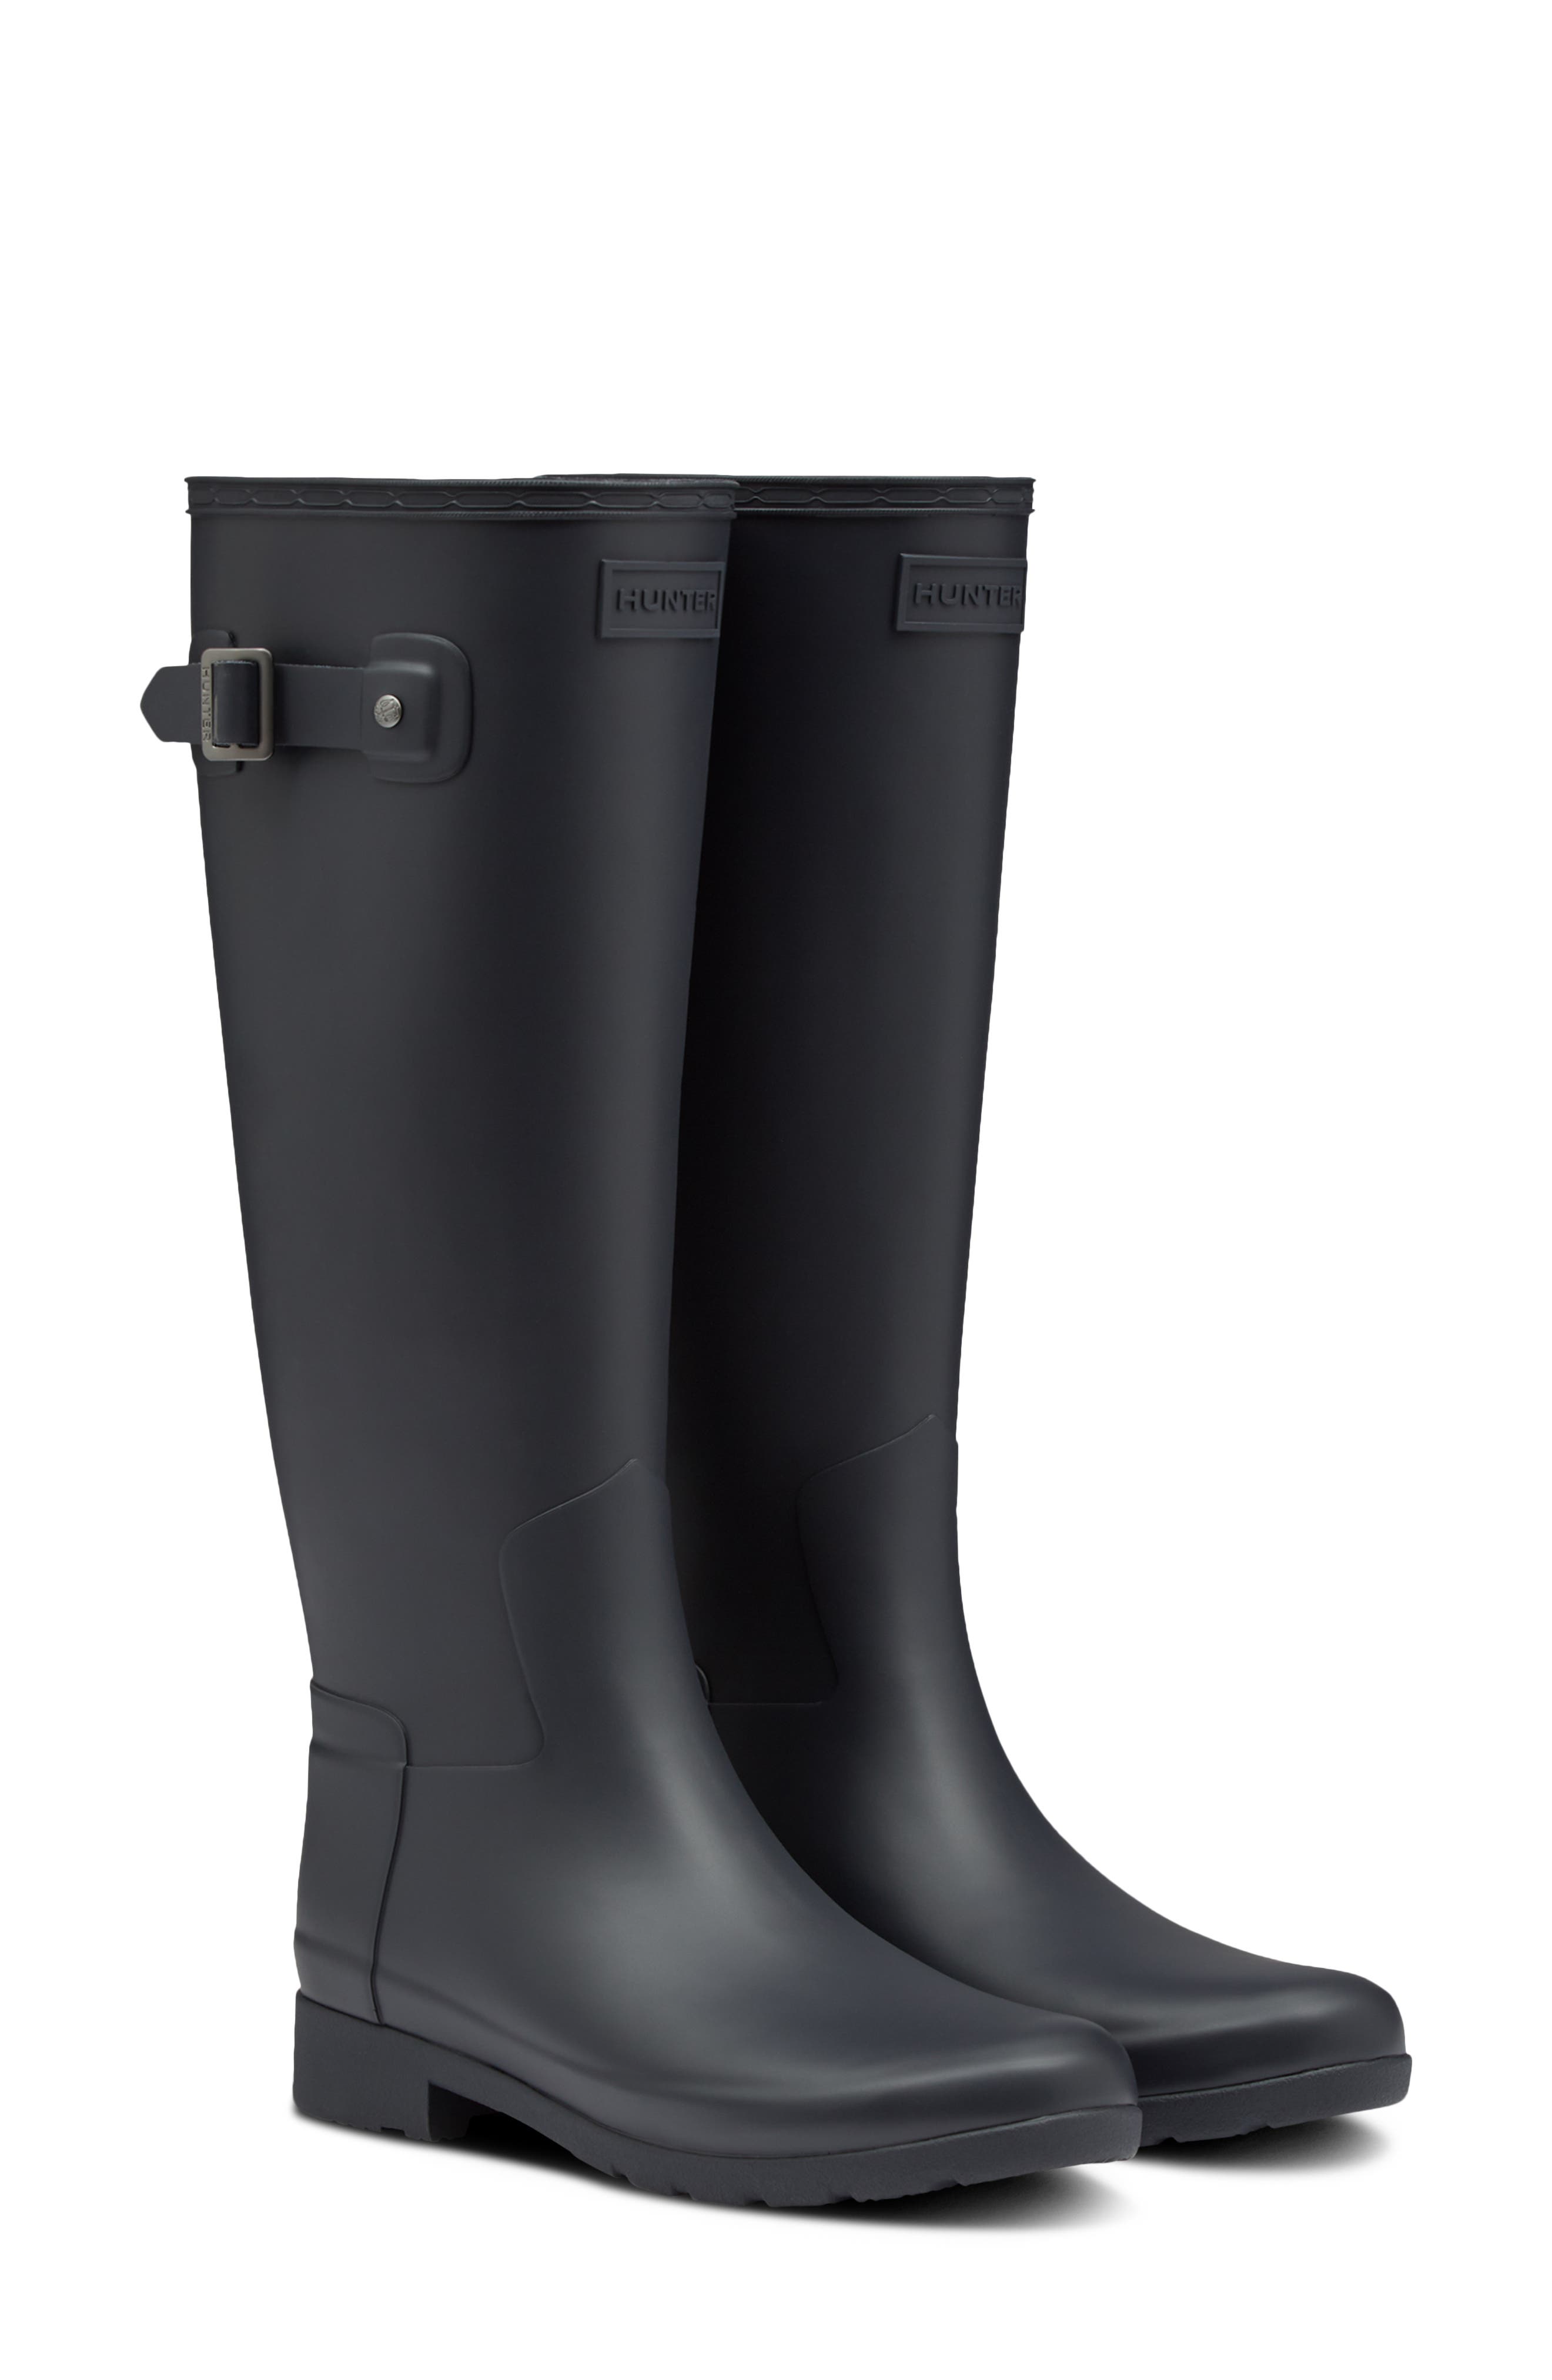 narrow rain boots